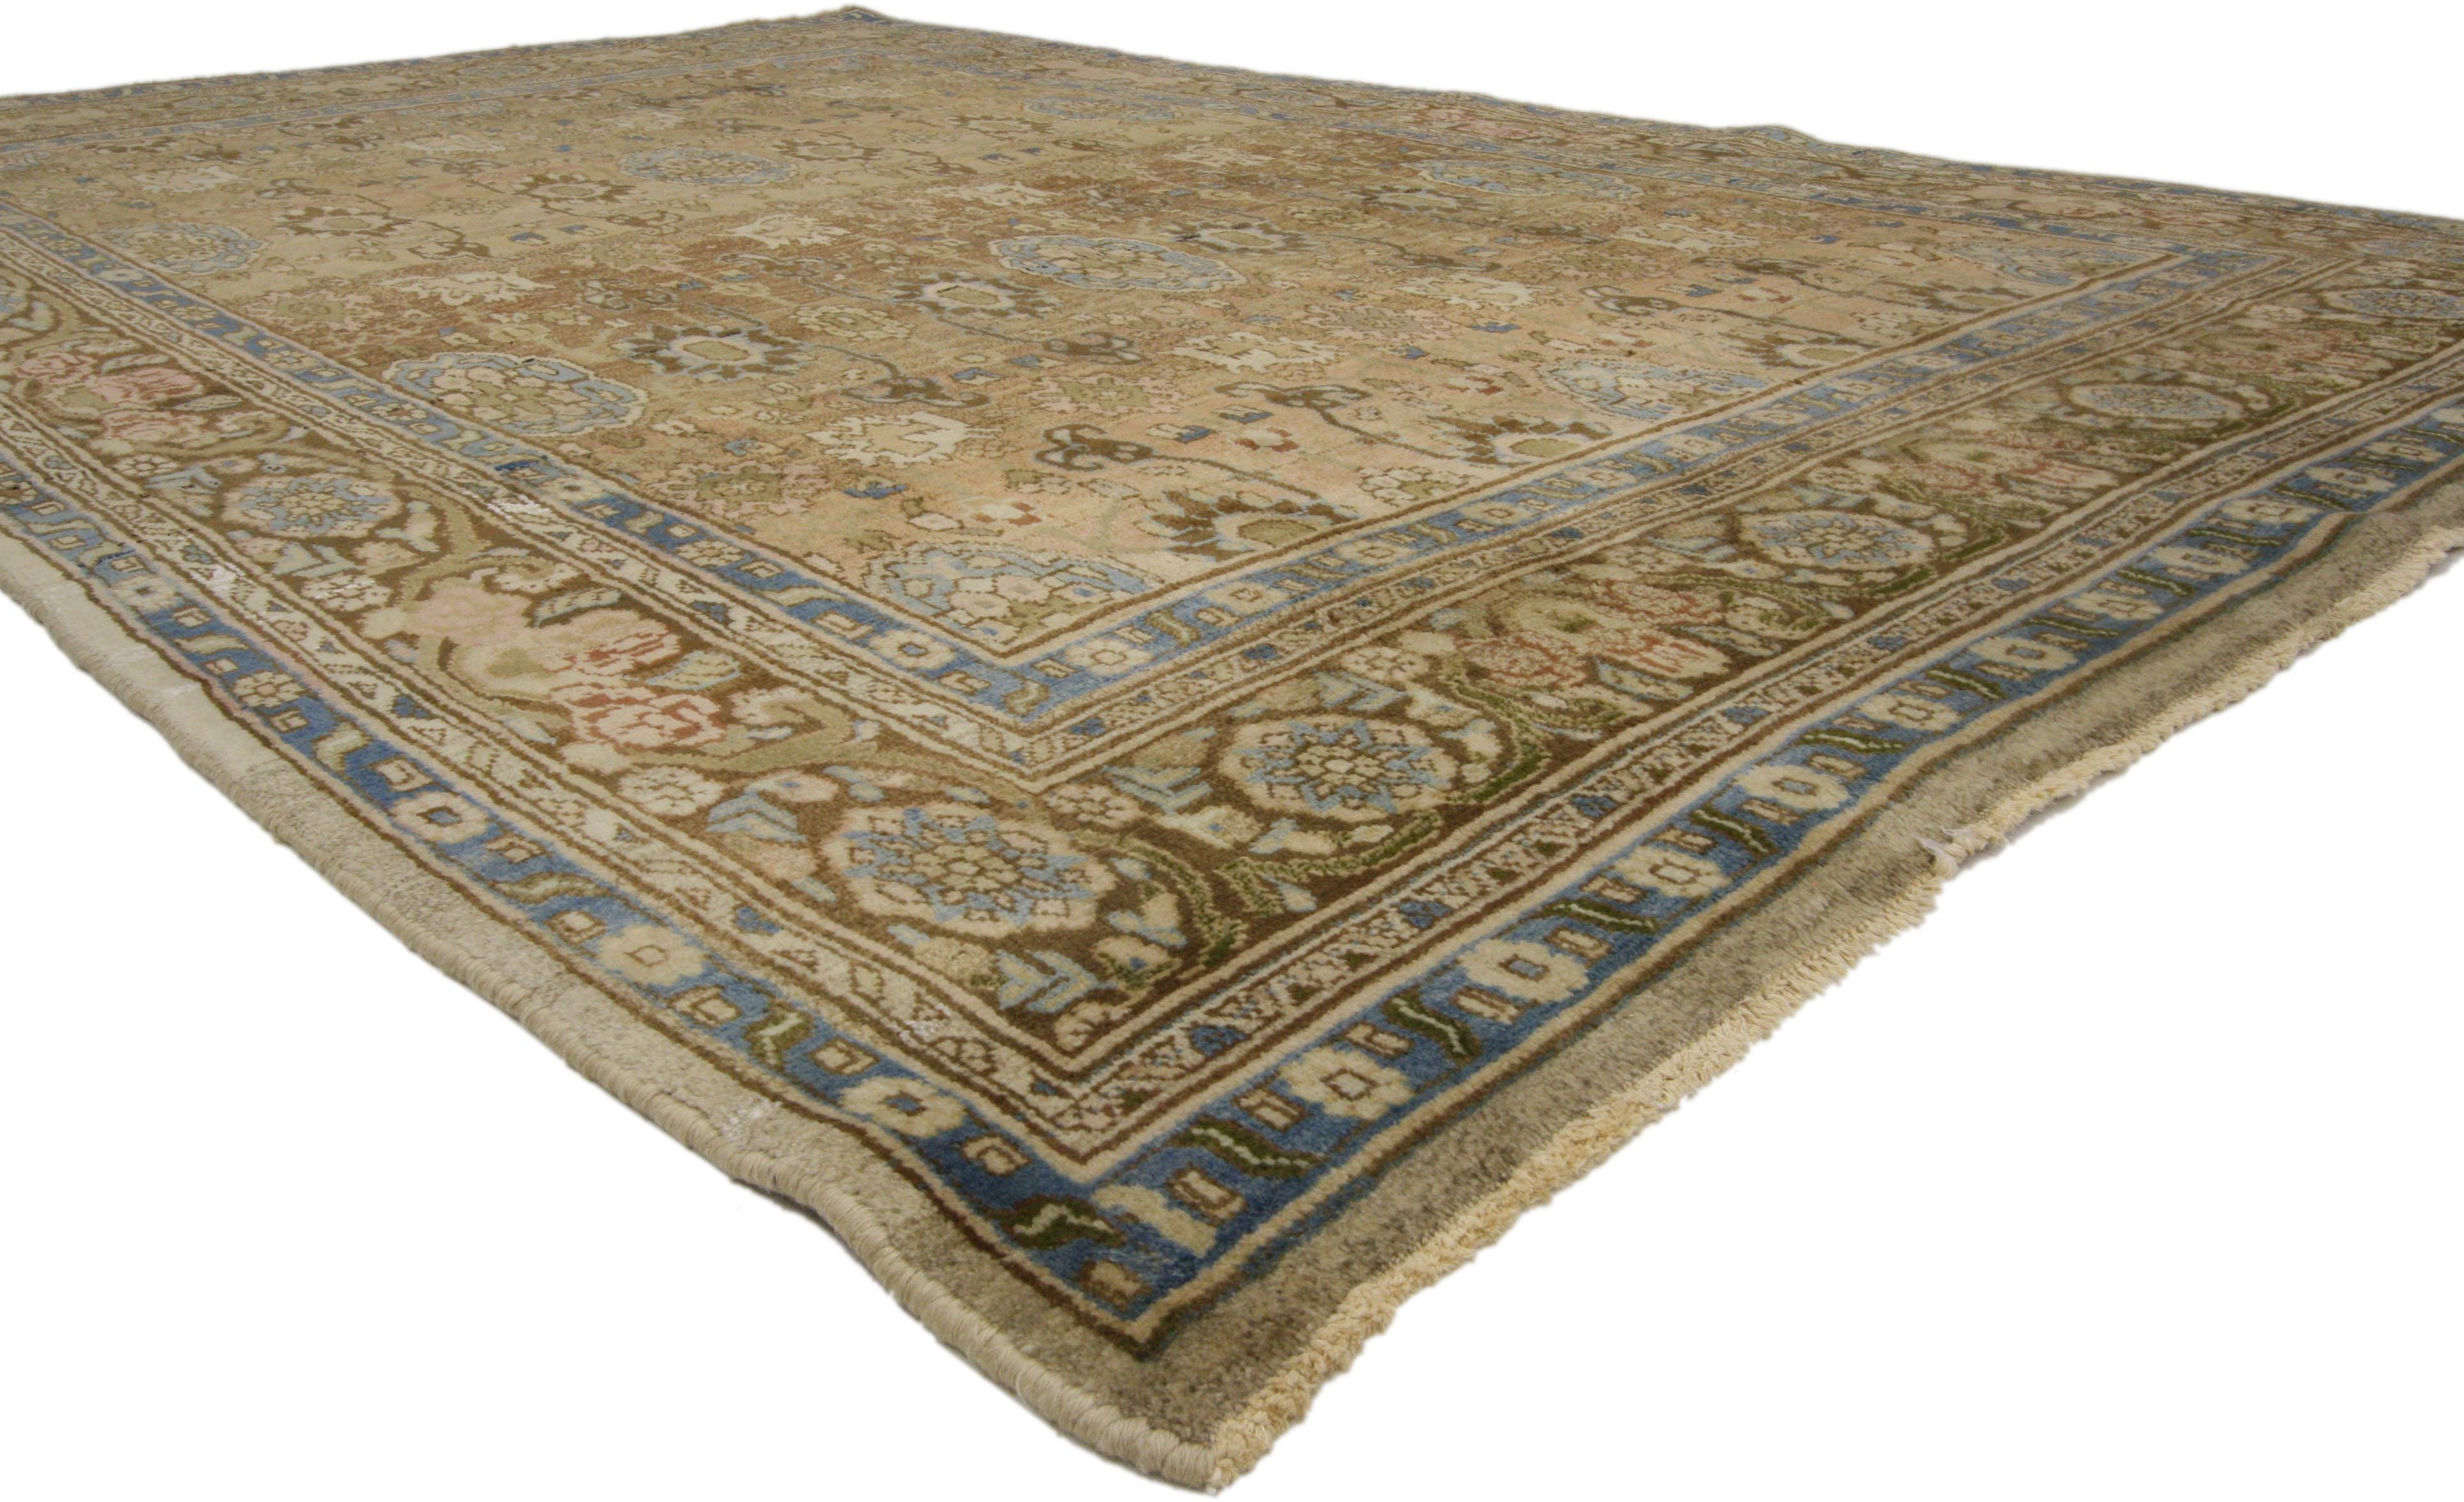 75966 Persischer Hamadan-Teppich im Vintage-Stil 06'09 x 10'11. Dieser handgeknüpfte Teppich aus alter persischer Hamadan-Wolle ist warm und einladend. Er zeigt ein botanisches Allover-Muster mit Blumen, stilisierten Blattmotiven und Medaillons. Es